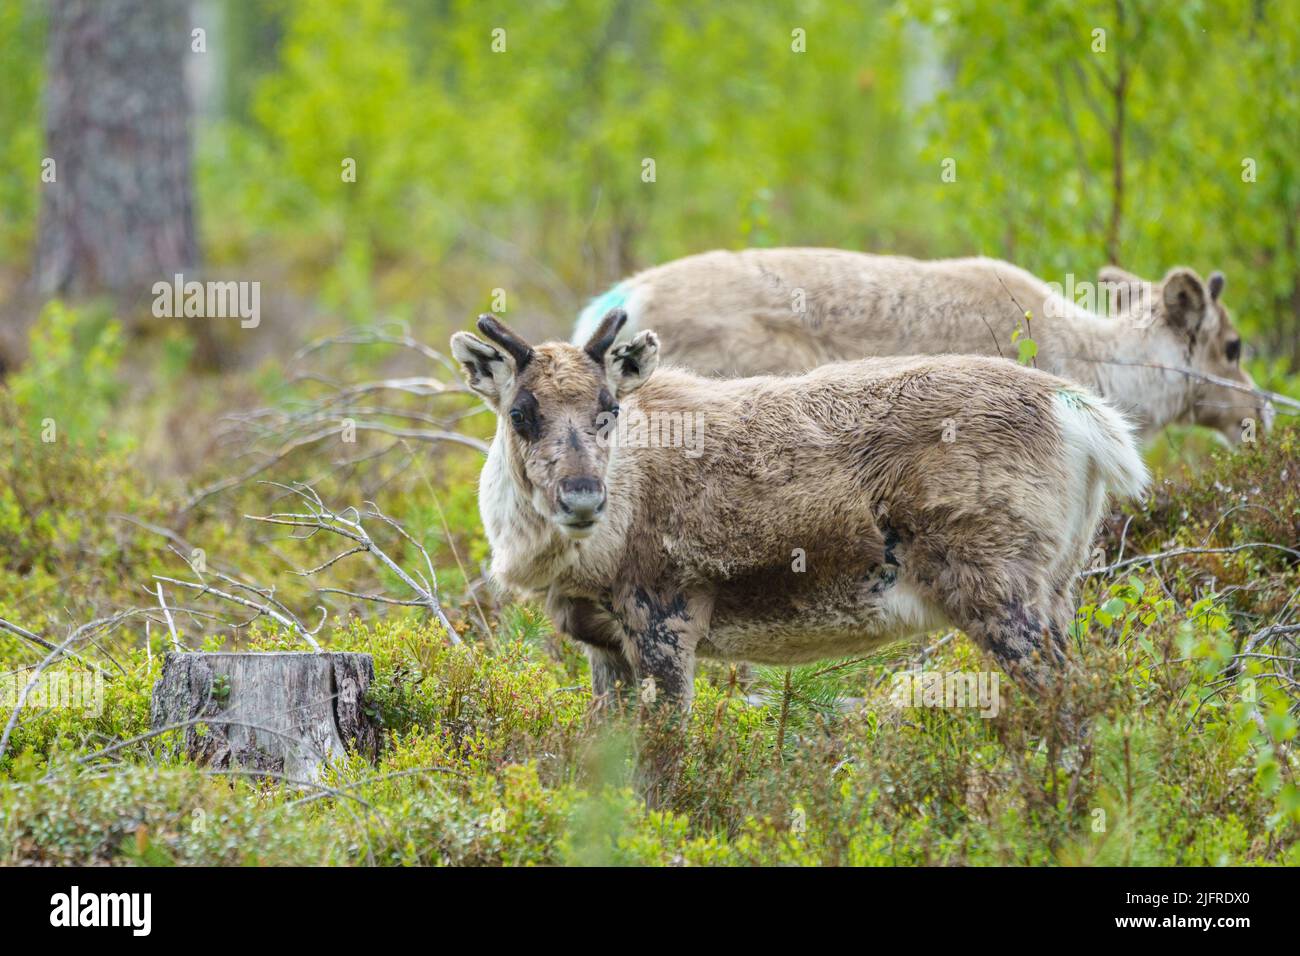 Rentiere, Rangifer tarandus Wandern im Wald auf der Suche nach Nahrung, Gällivare County, Schwedisch Lappland, Schweden Stockfoto